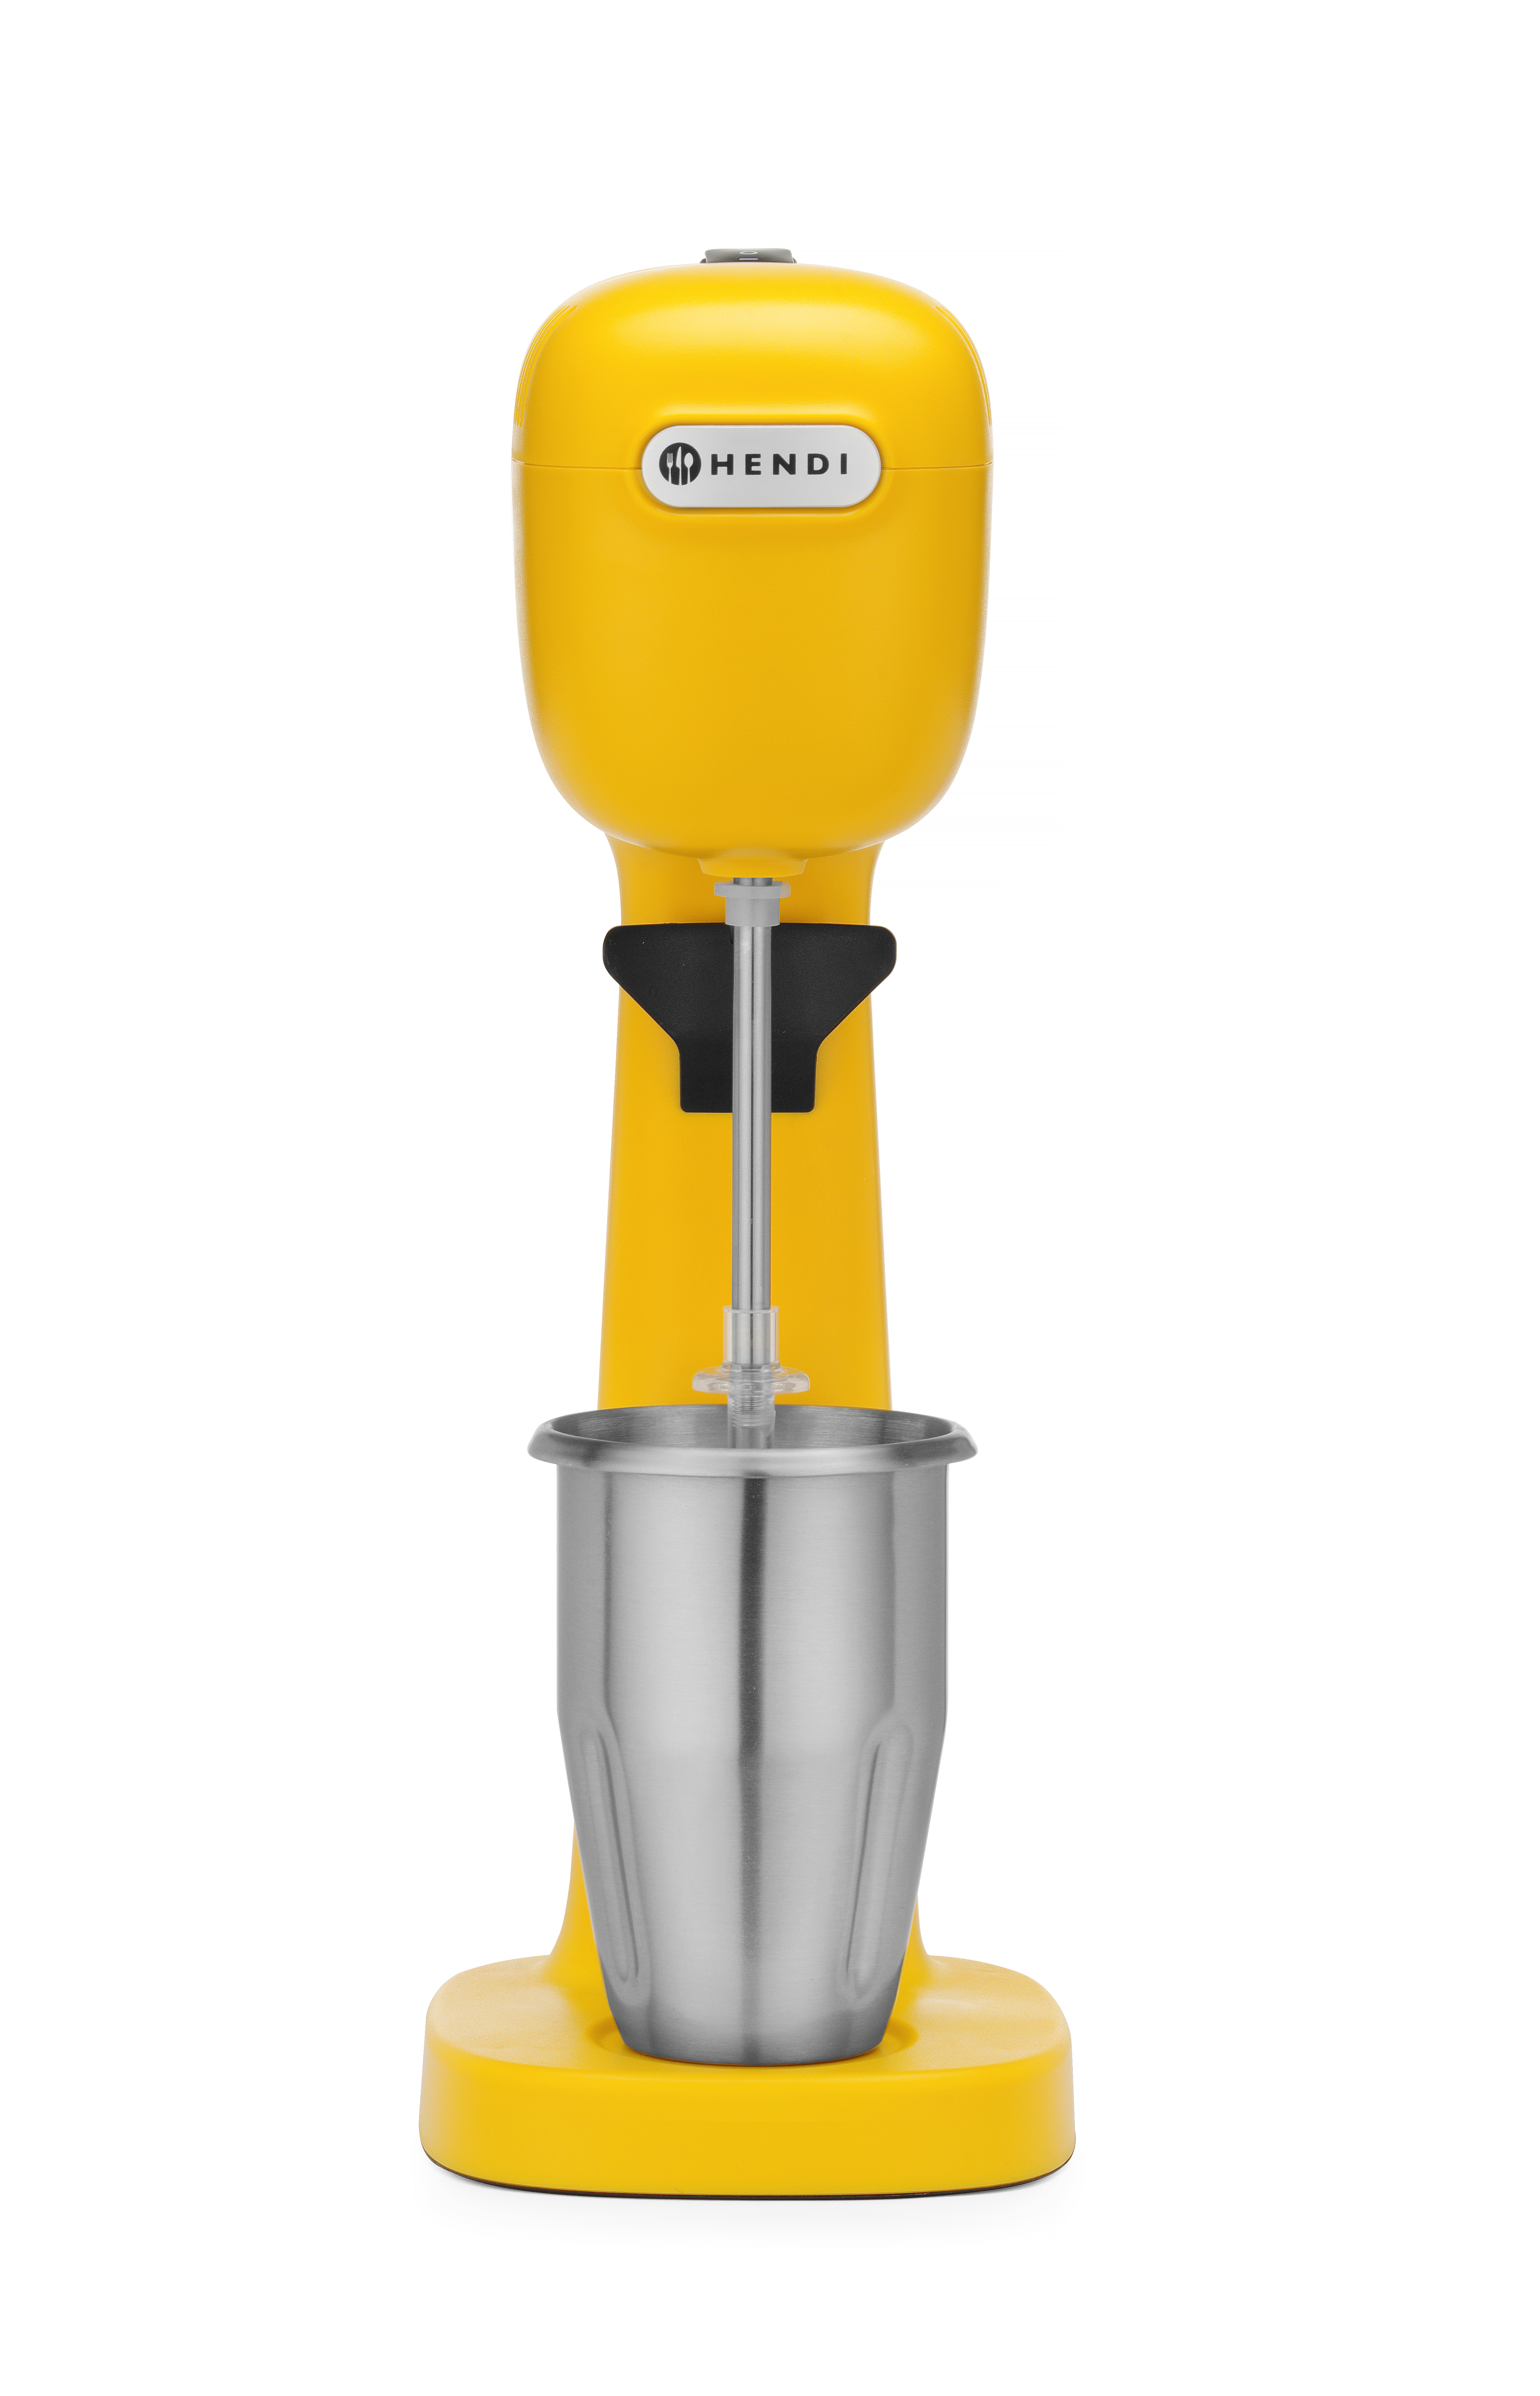 HENDI Milchshake-Mixer - Design by Milchshaker Gelb Gelb, 230V/400W Bronwasser